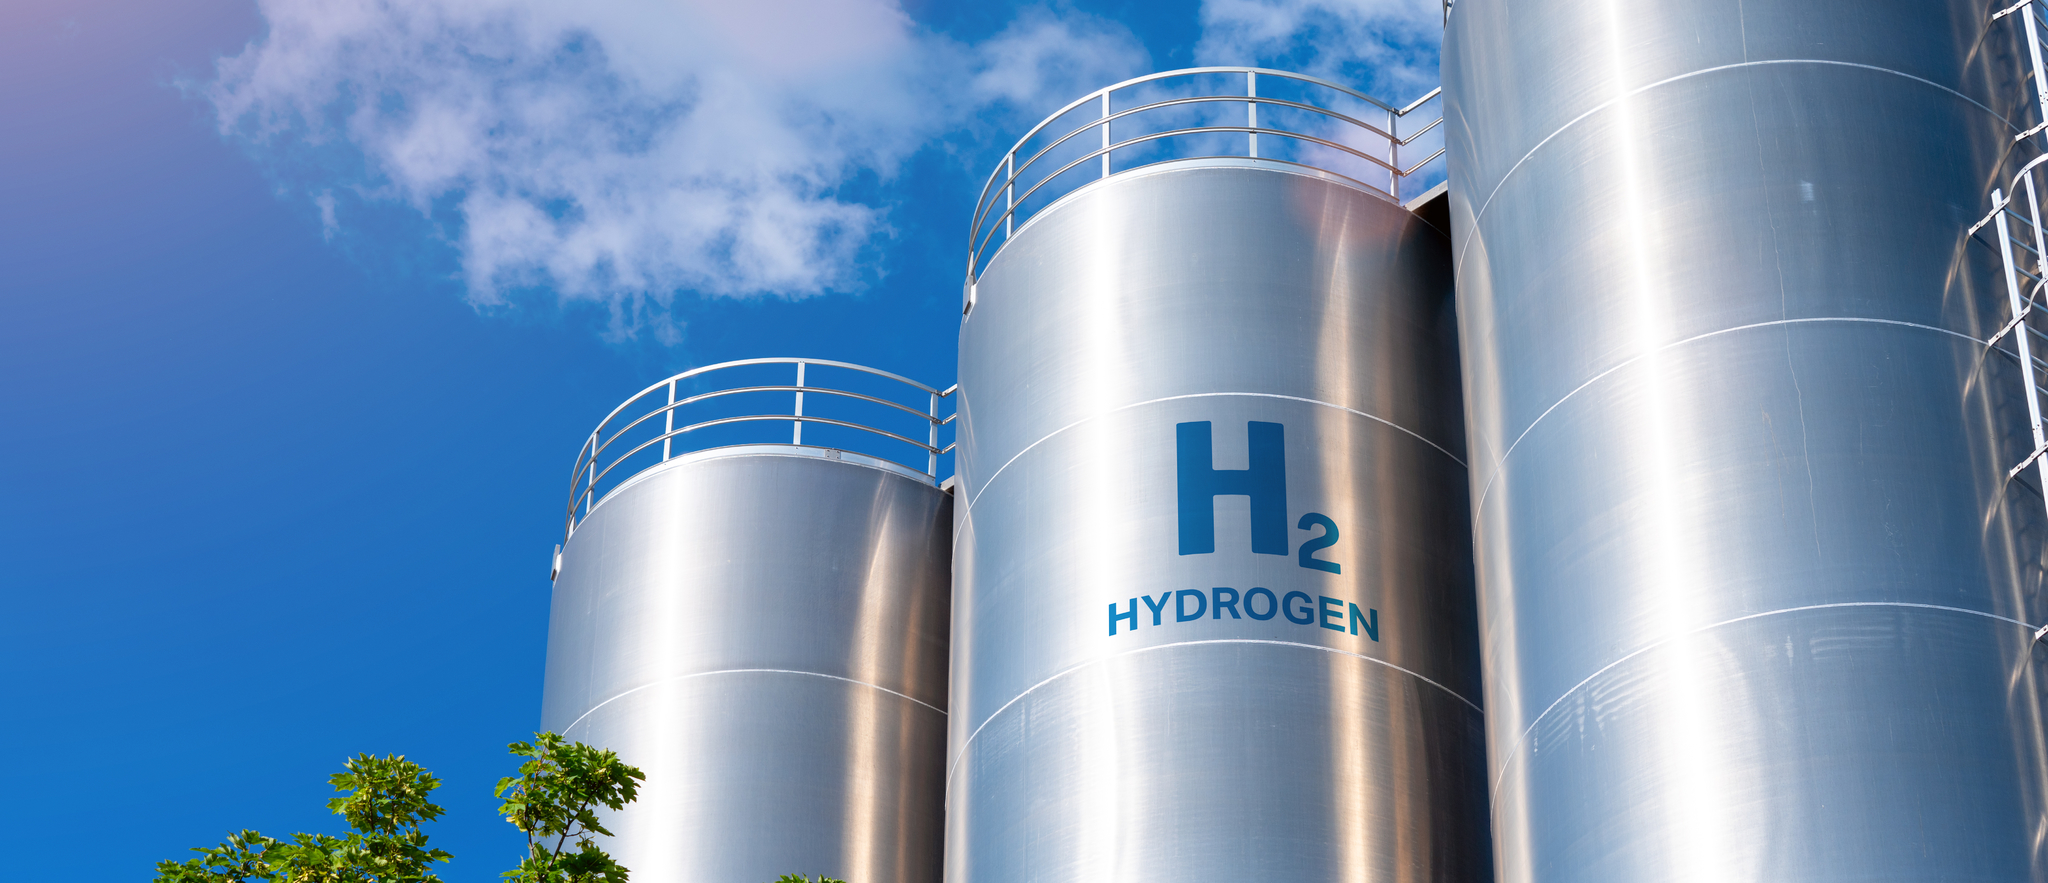 Depósitos de hidrógeno